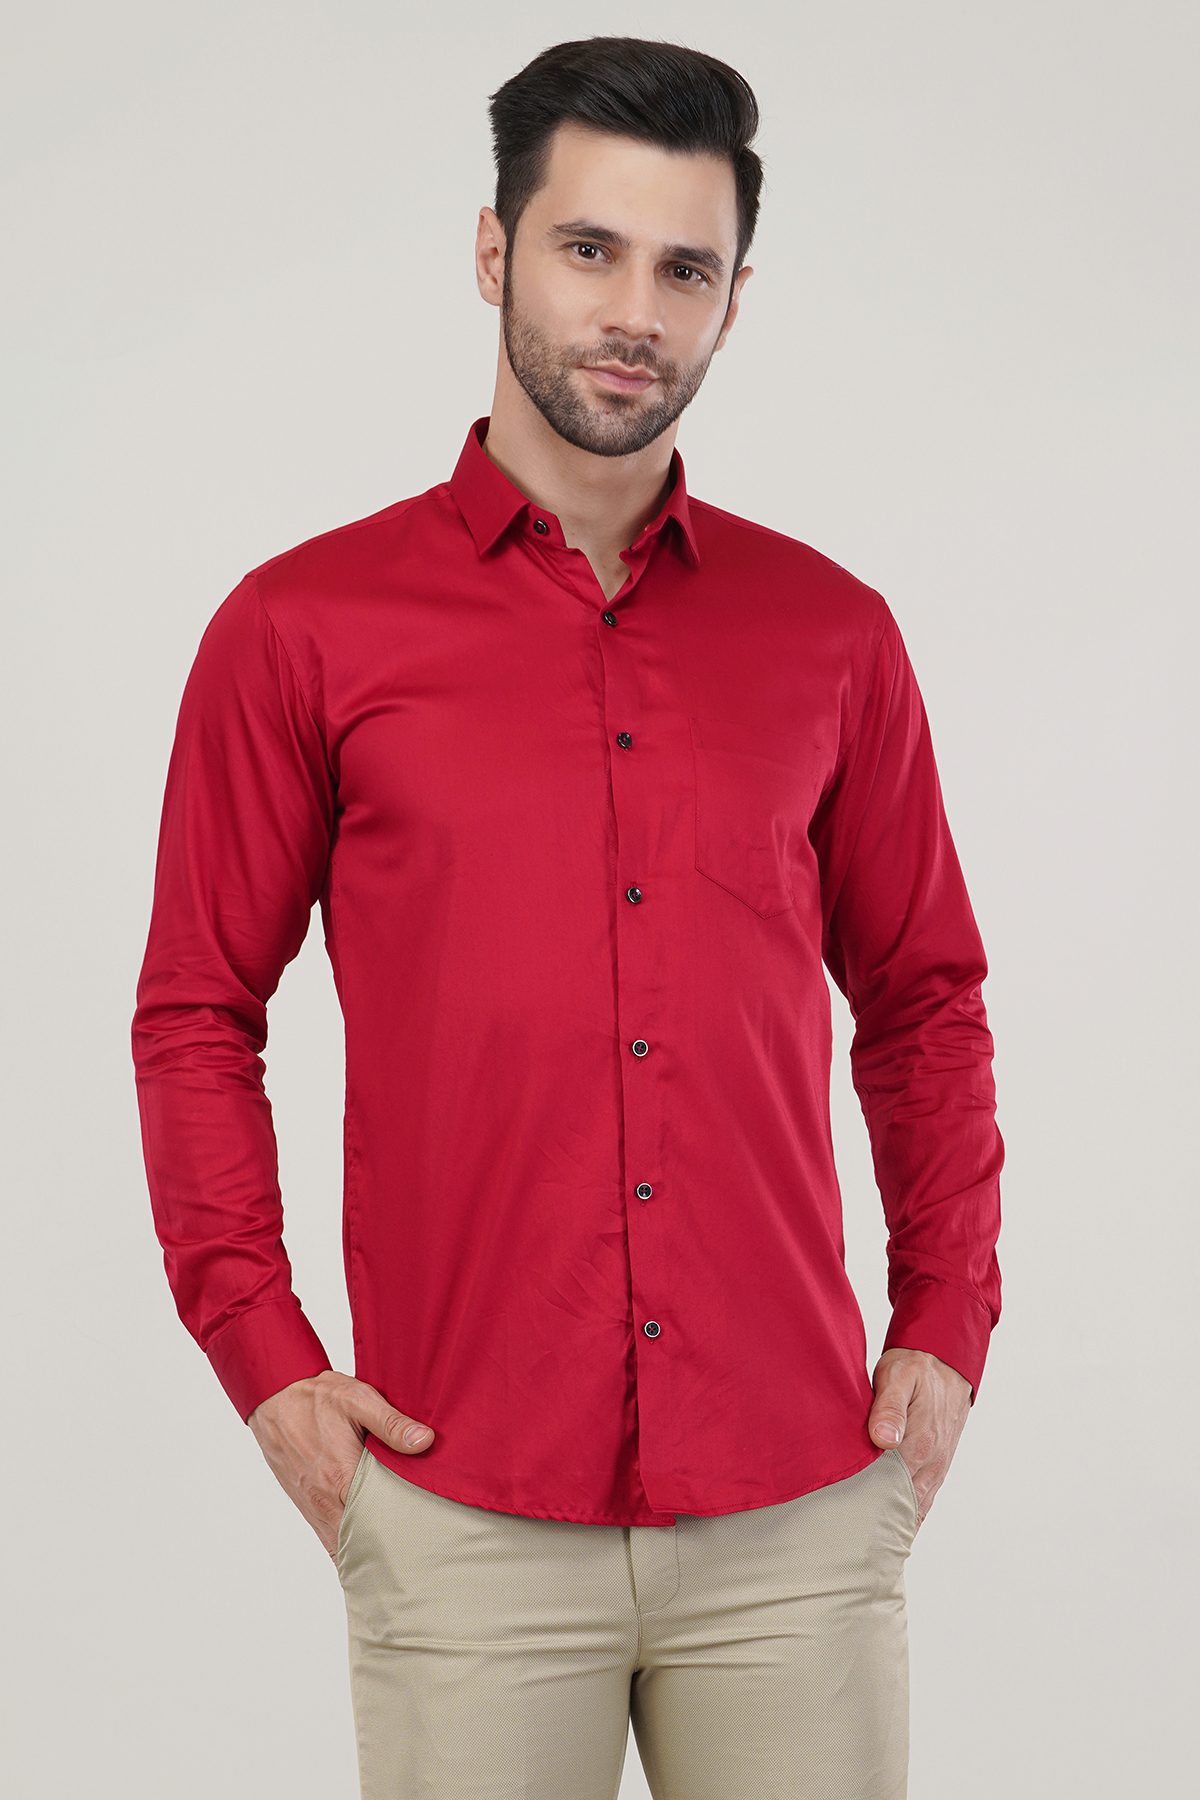 Red Color Super Soft Premium Cotton Satin Party Wear Shirt For Men’s